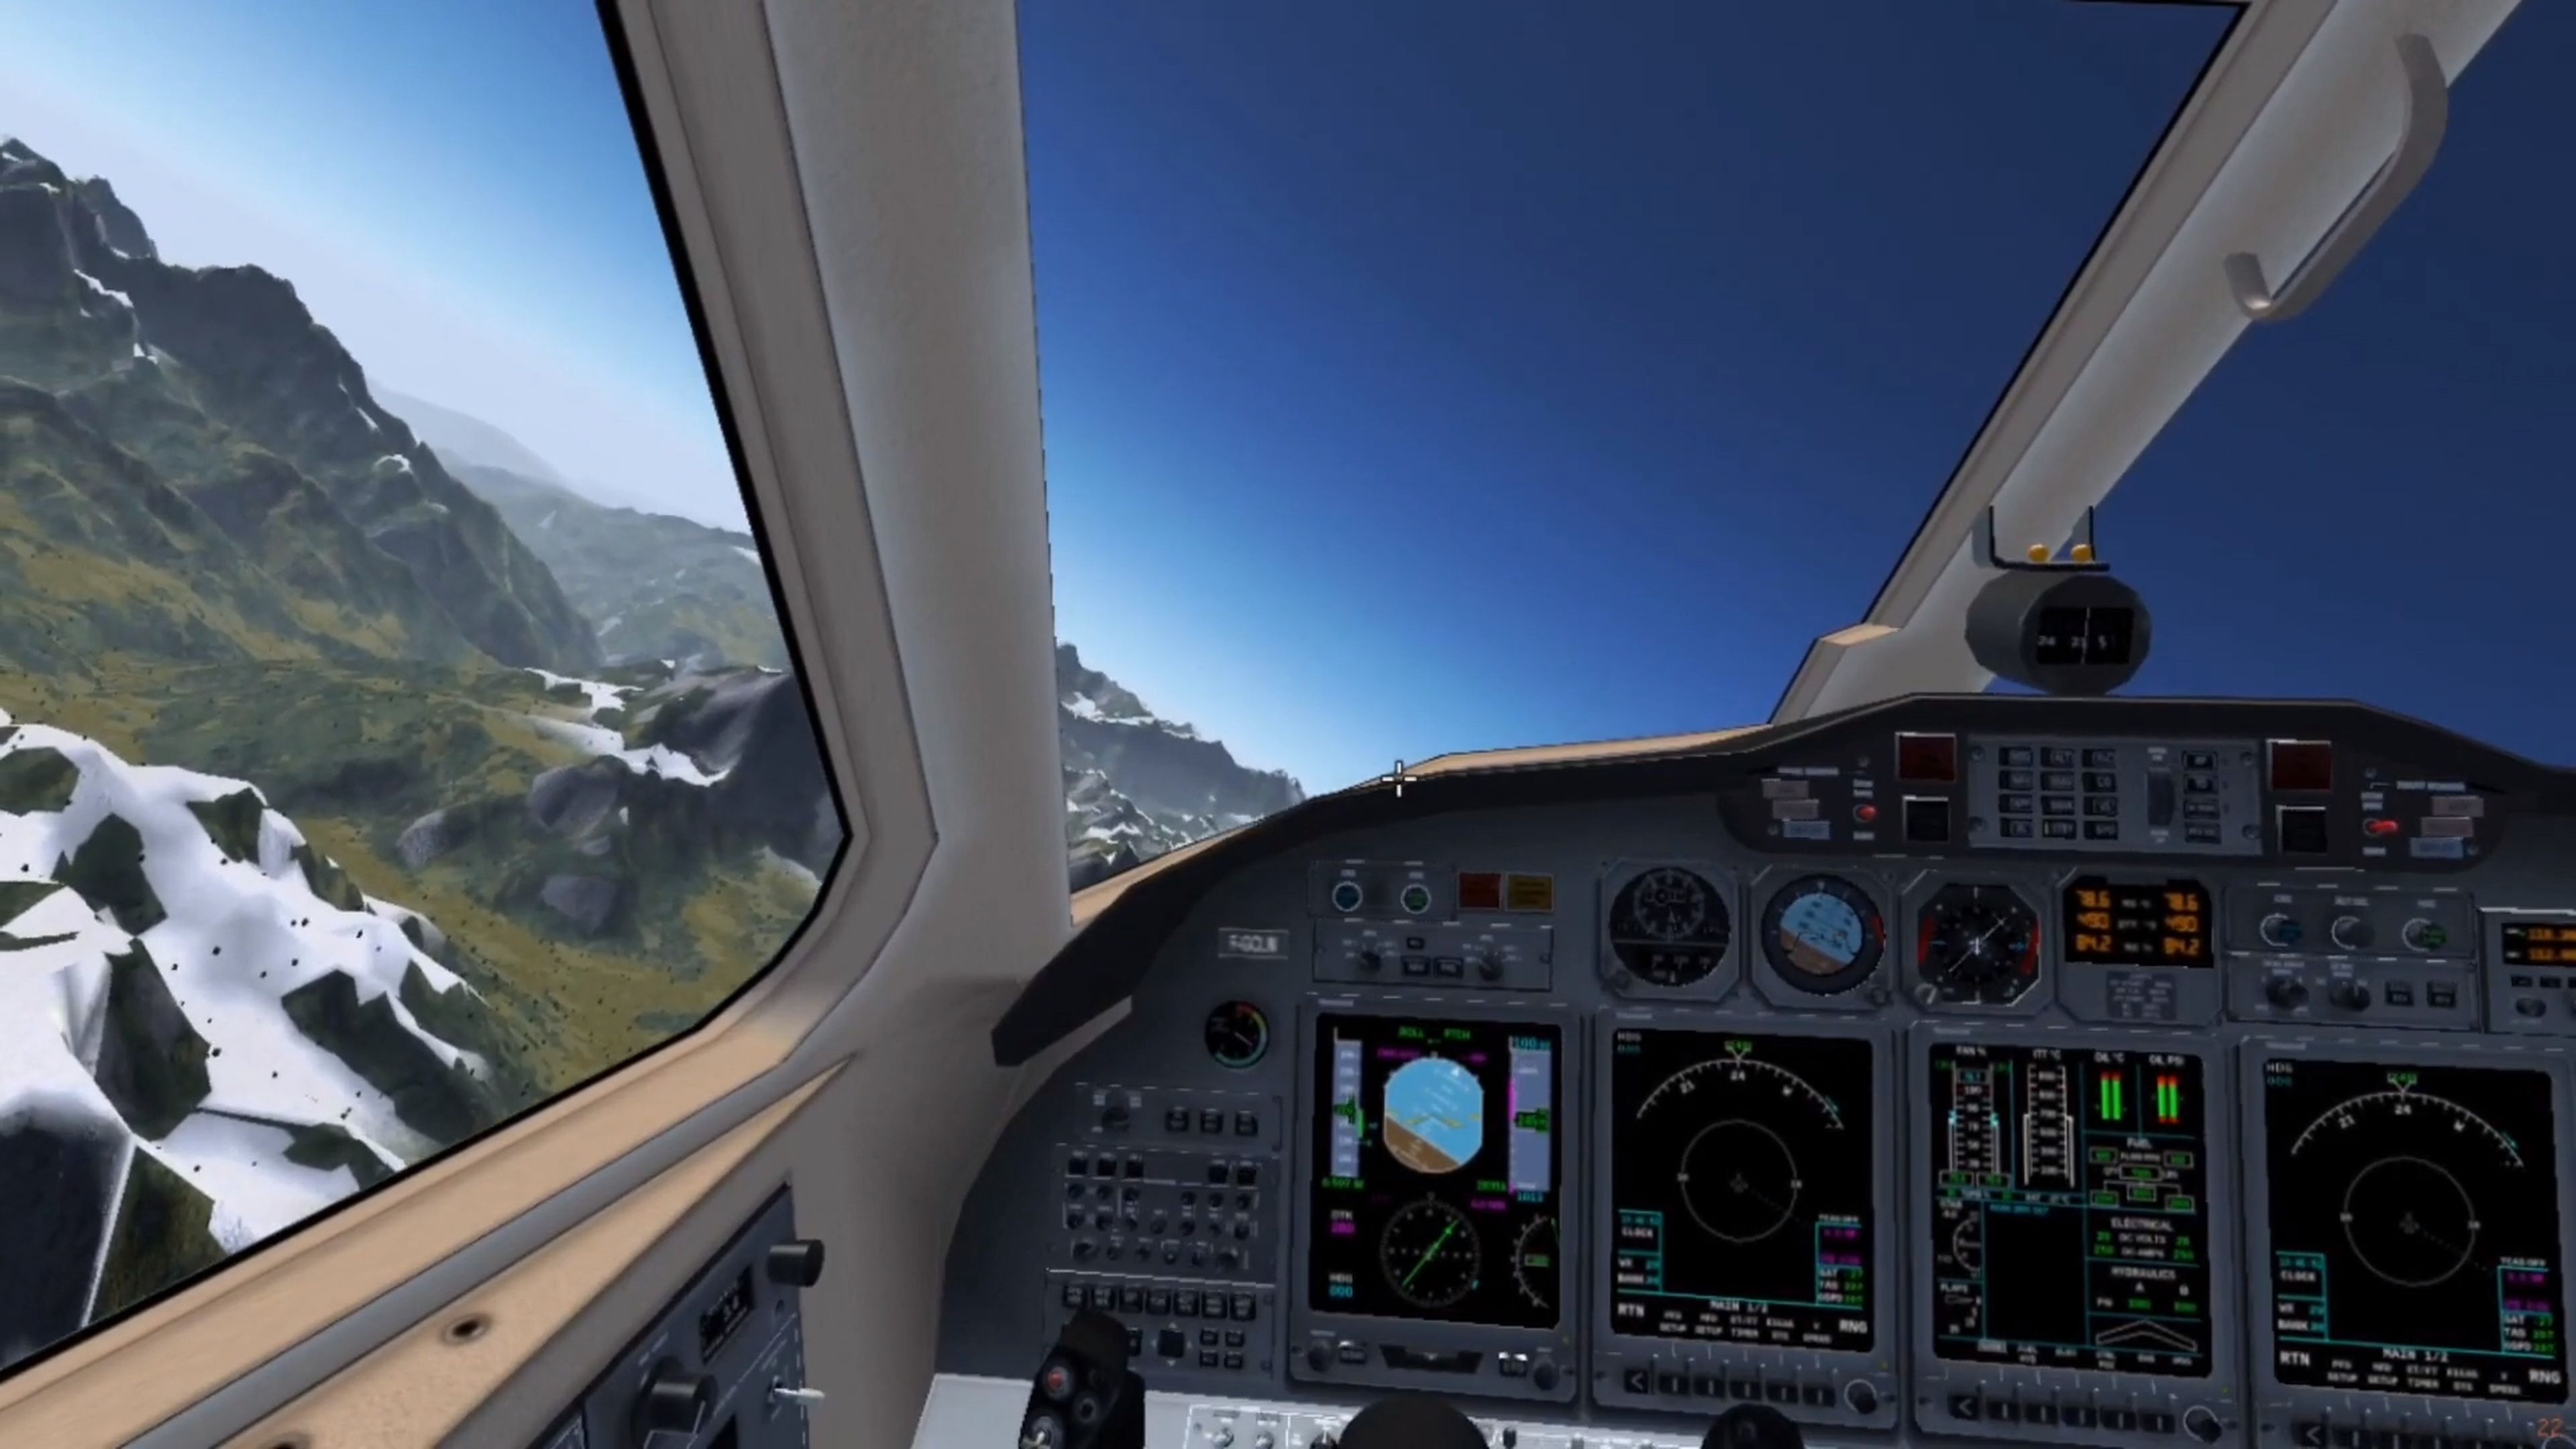 Si tu PC no puede con Microsoft Flight Simulator, prueba este simulador de vuelo gratuito y de código abierto